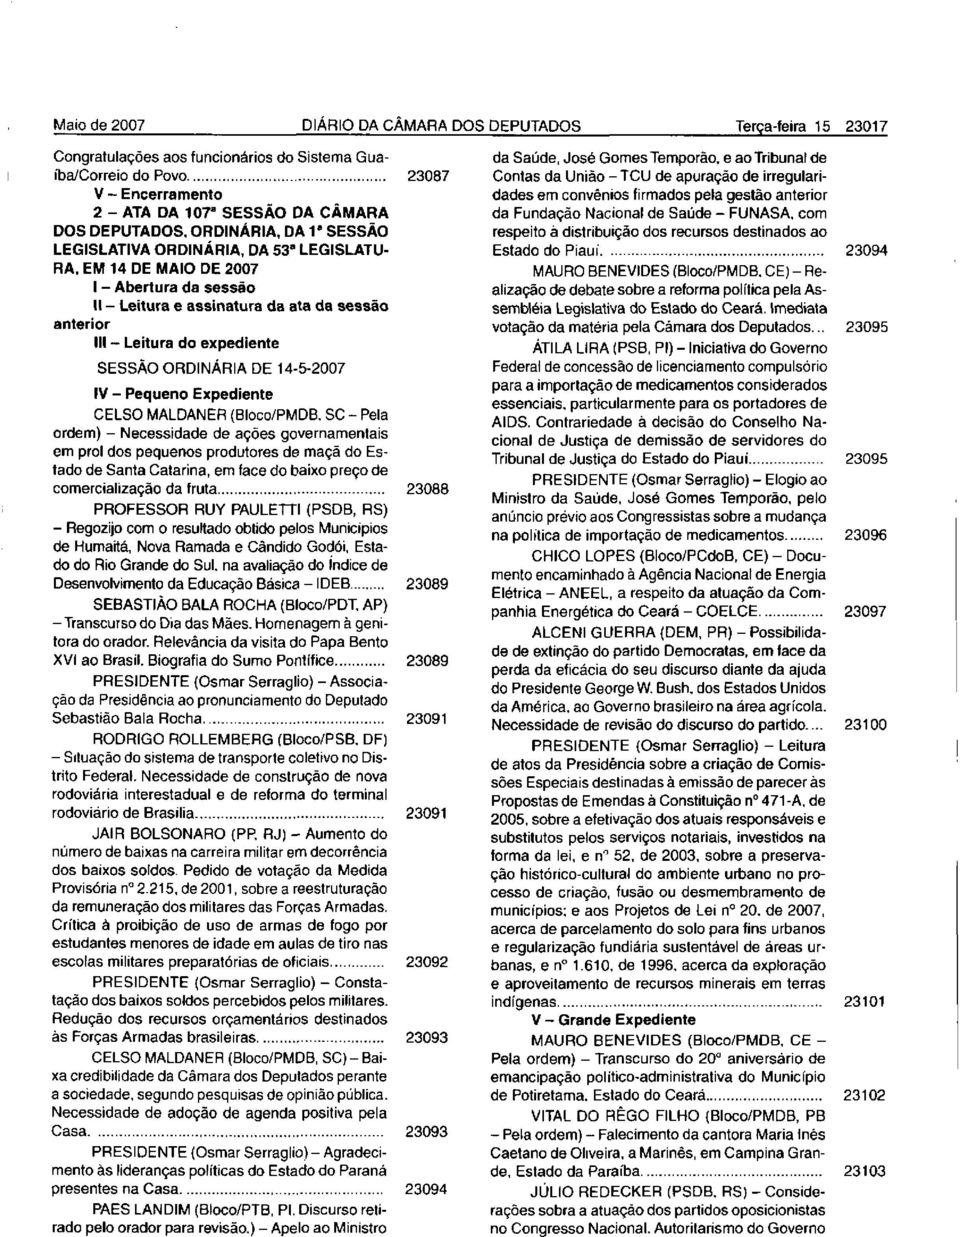 EM 14 DE MAIO DE 2007 I - Abertura da sessão 11- Leitura e assinatura da ata da sessão anterior 111 - Leitura do expediente SESSÃO ORDINÁRIA DE 14-5-2007 IV - Pequeno Expediente CELSO MALDANER